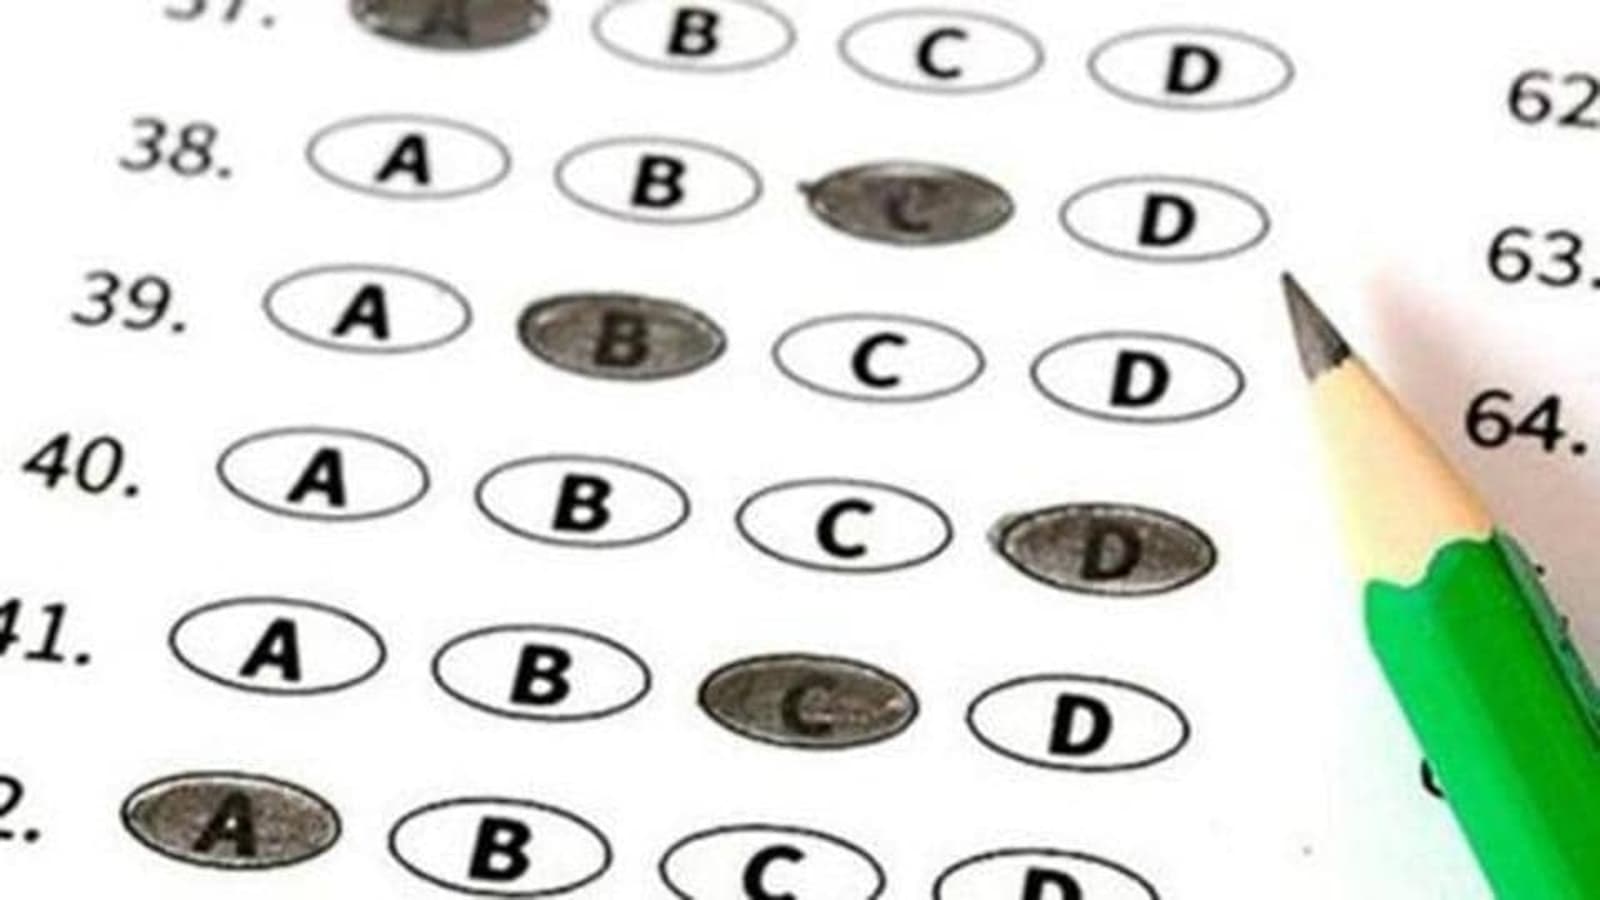 DSSSB answer key 2022 out for exams held in April at dsssb.delhi.gov.in